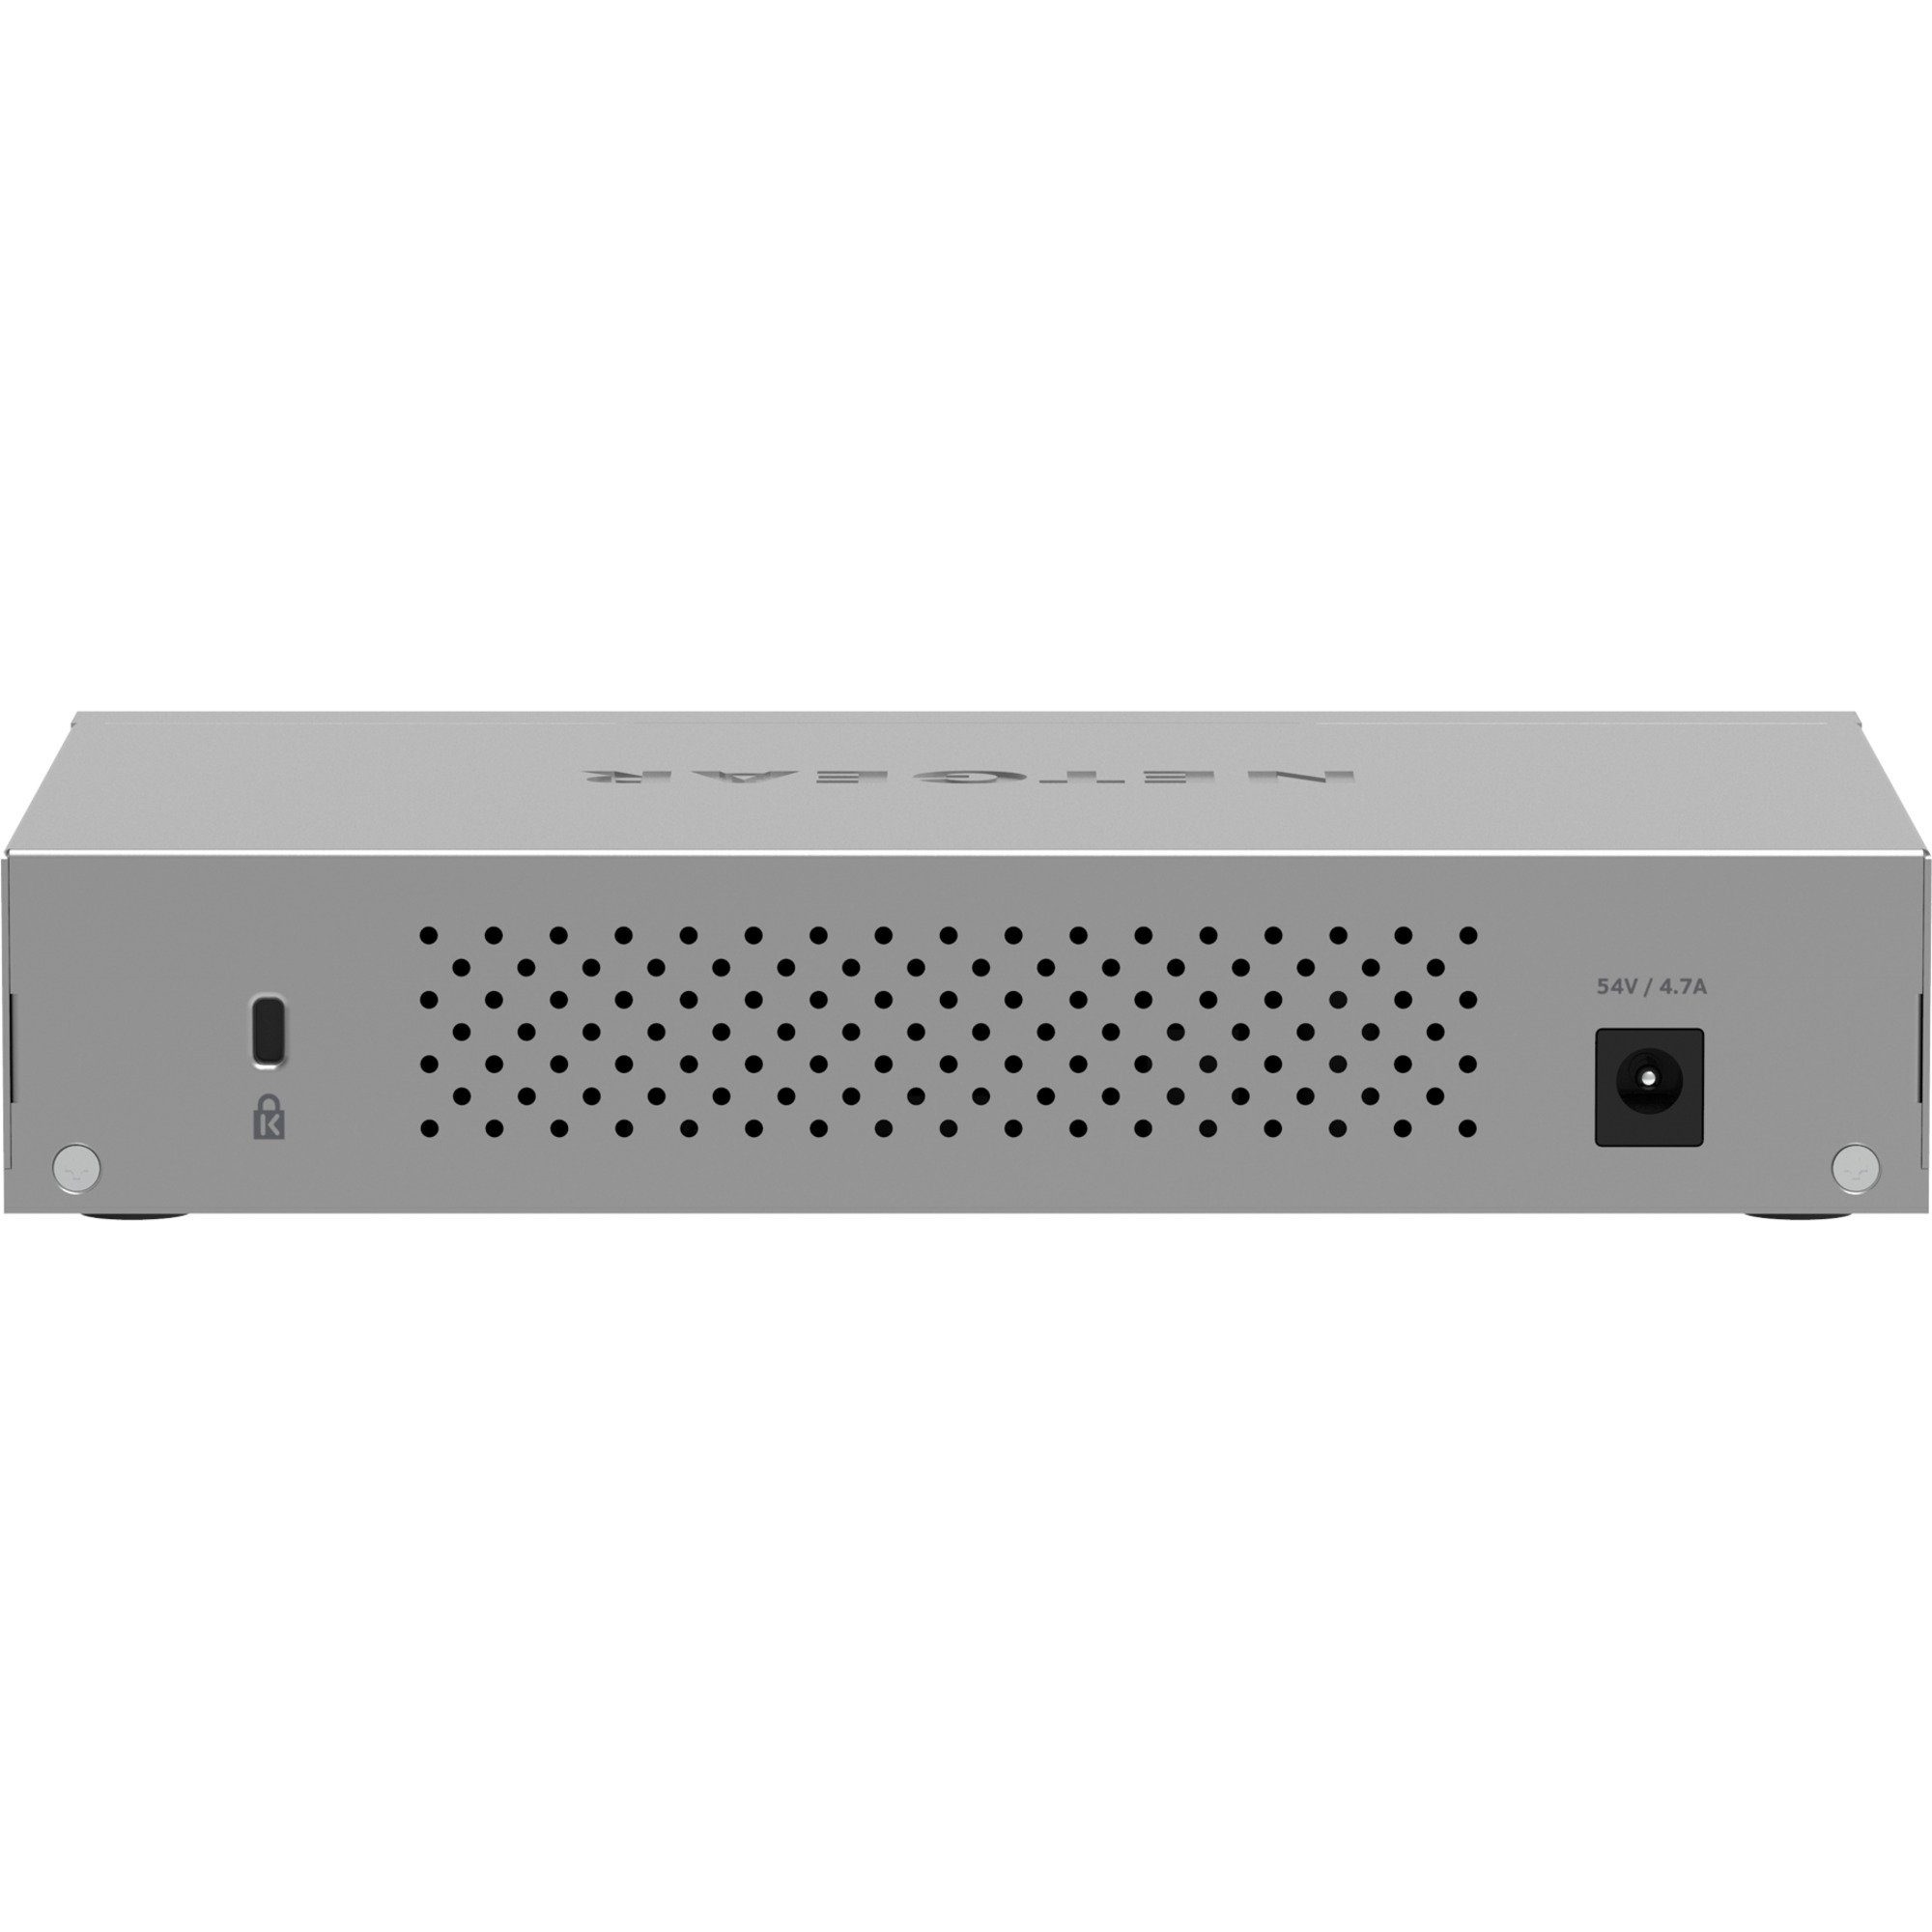 NETGEAR Netgear MS108UP 8-Port Switch Ultra Netzwerk-Switch 60 PoE